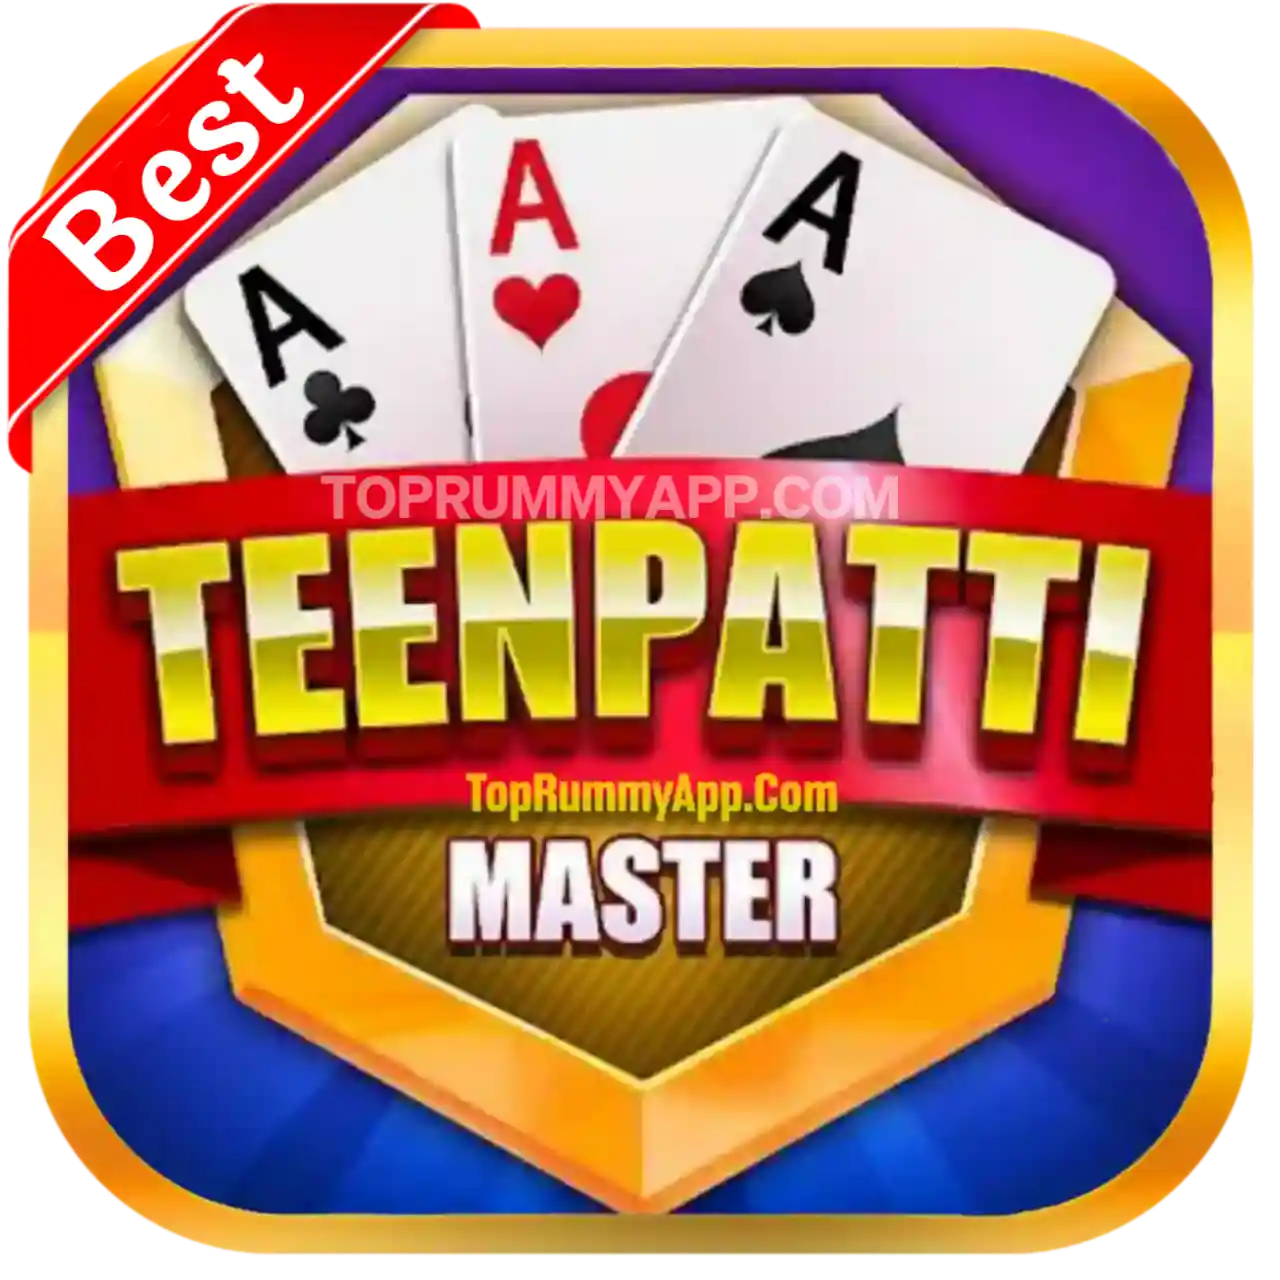 Teen Patti Master App Logo